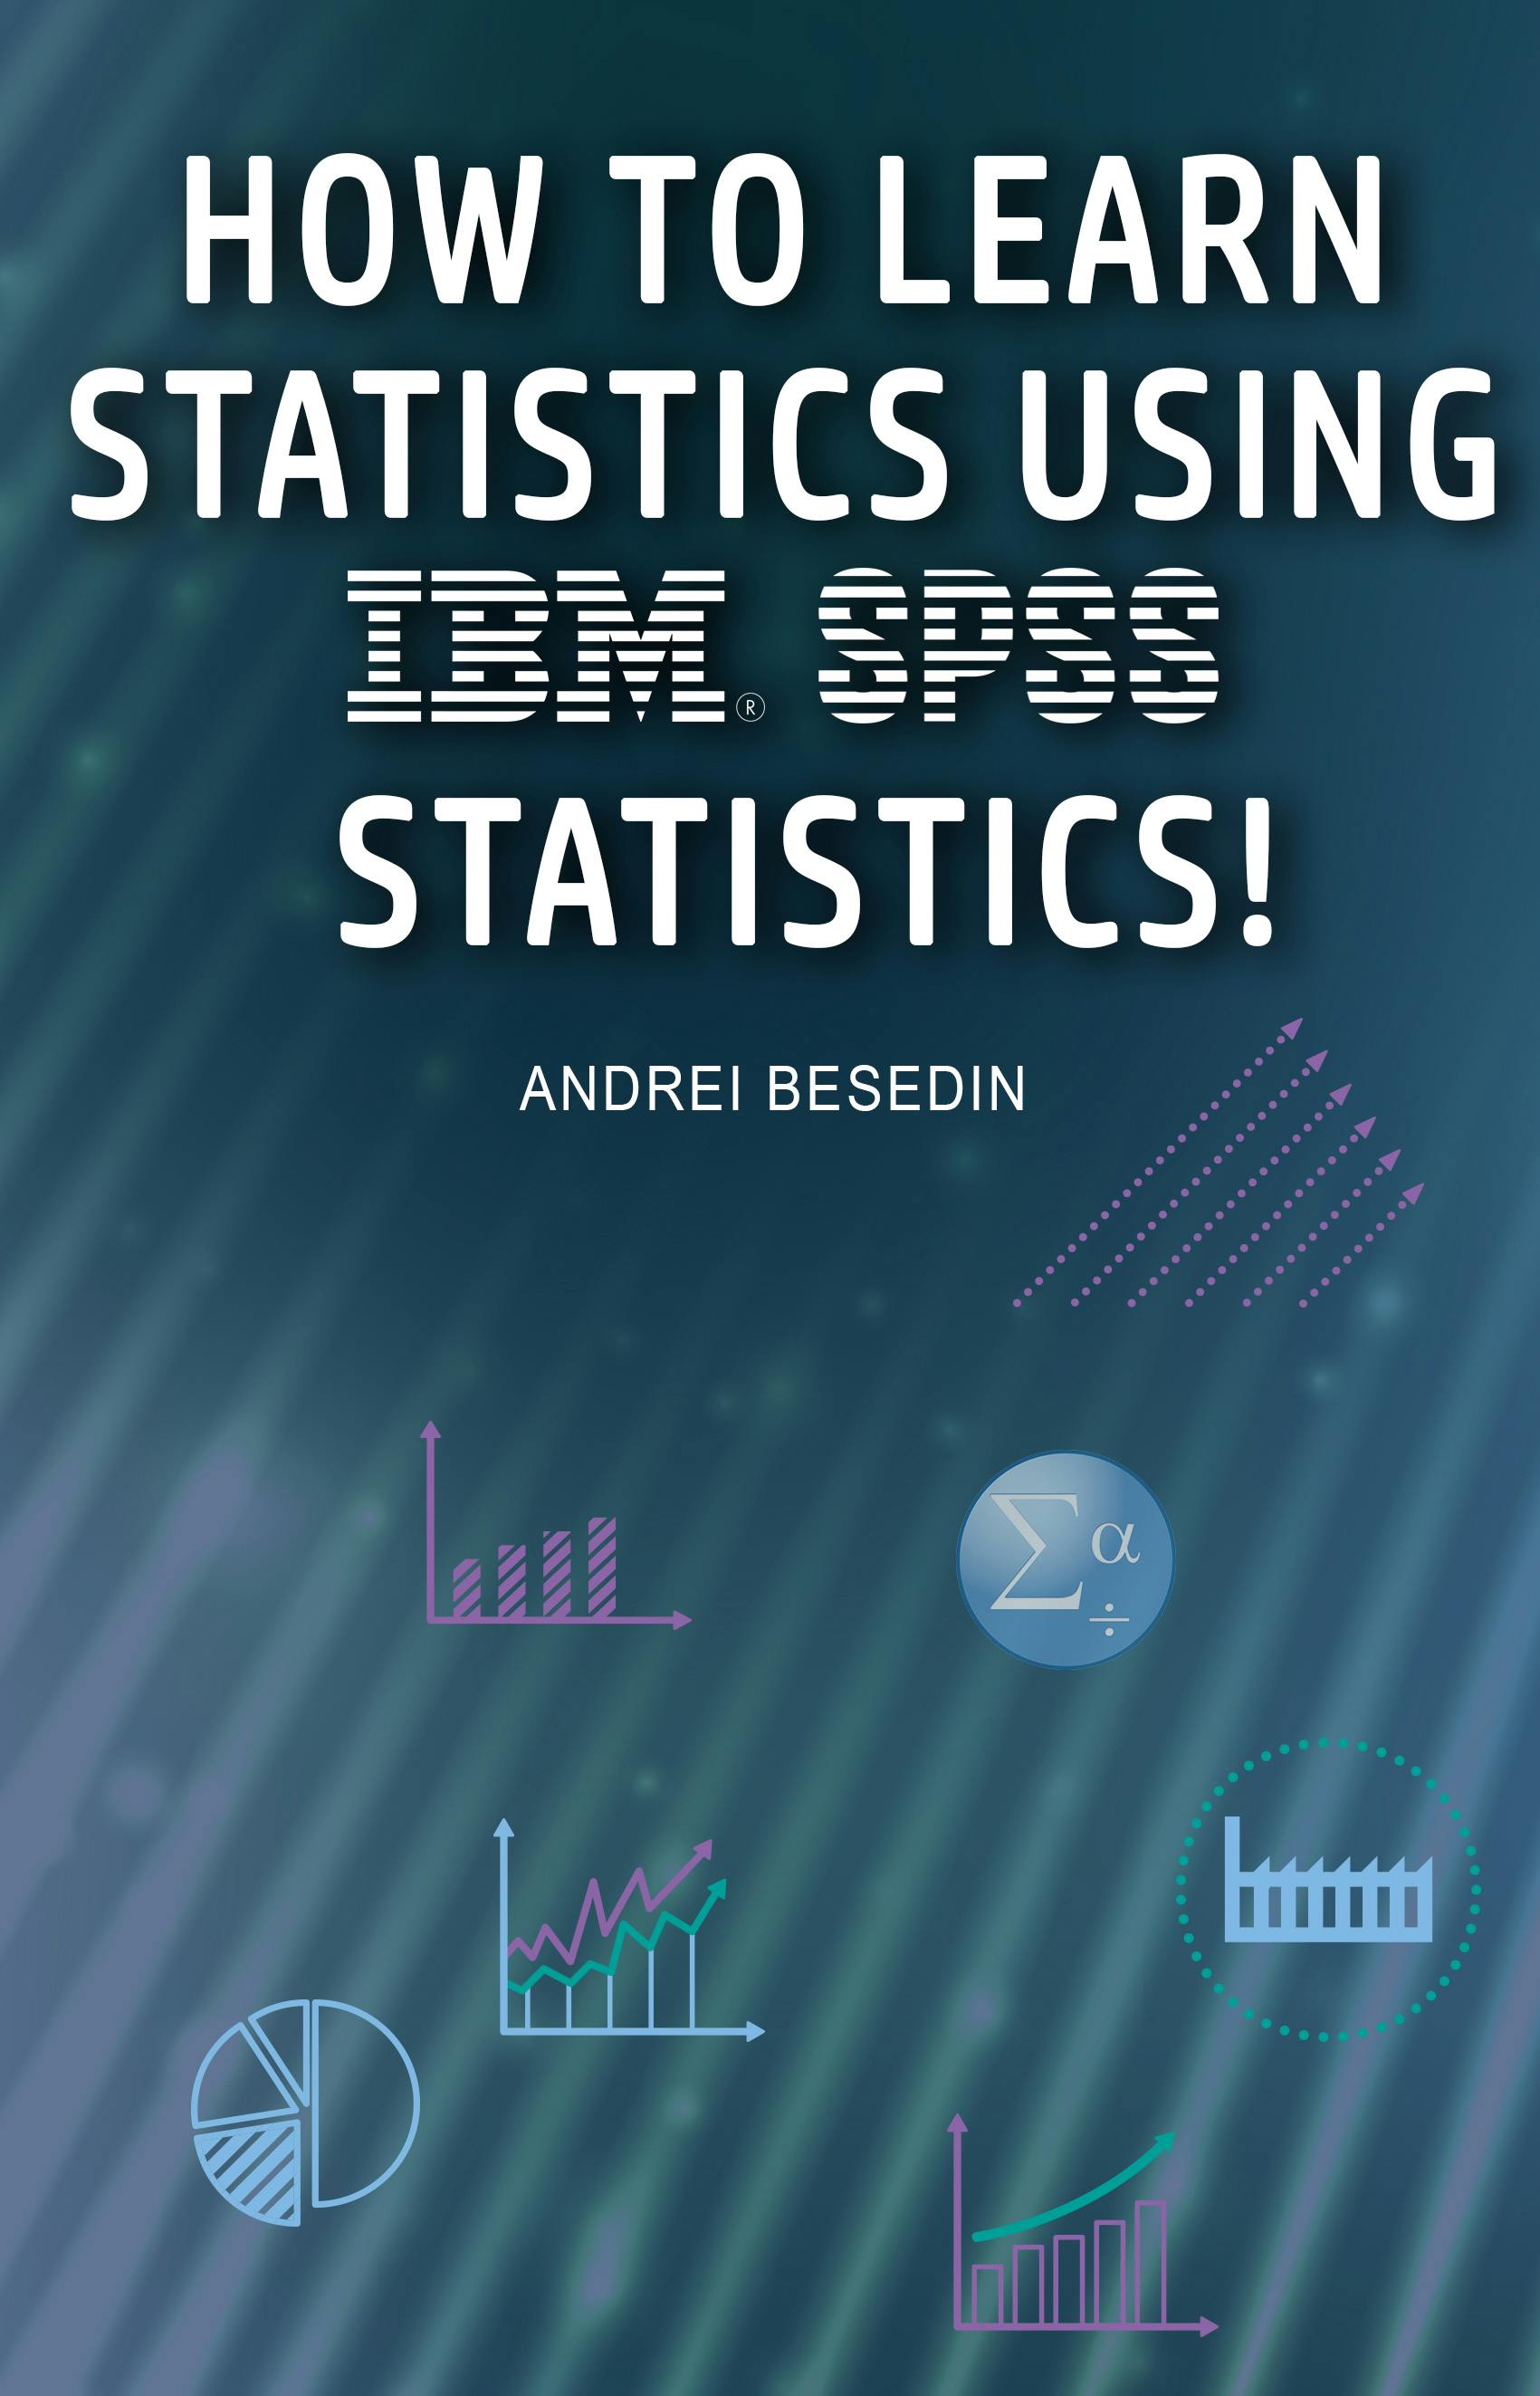 IBM SPSS Statistics 21 Brief Guide - Andrei Besedin, IBM Corporation